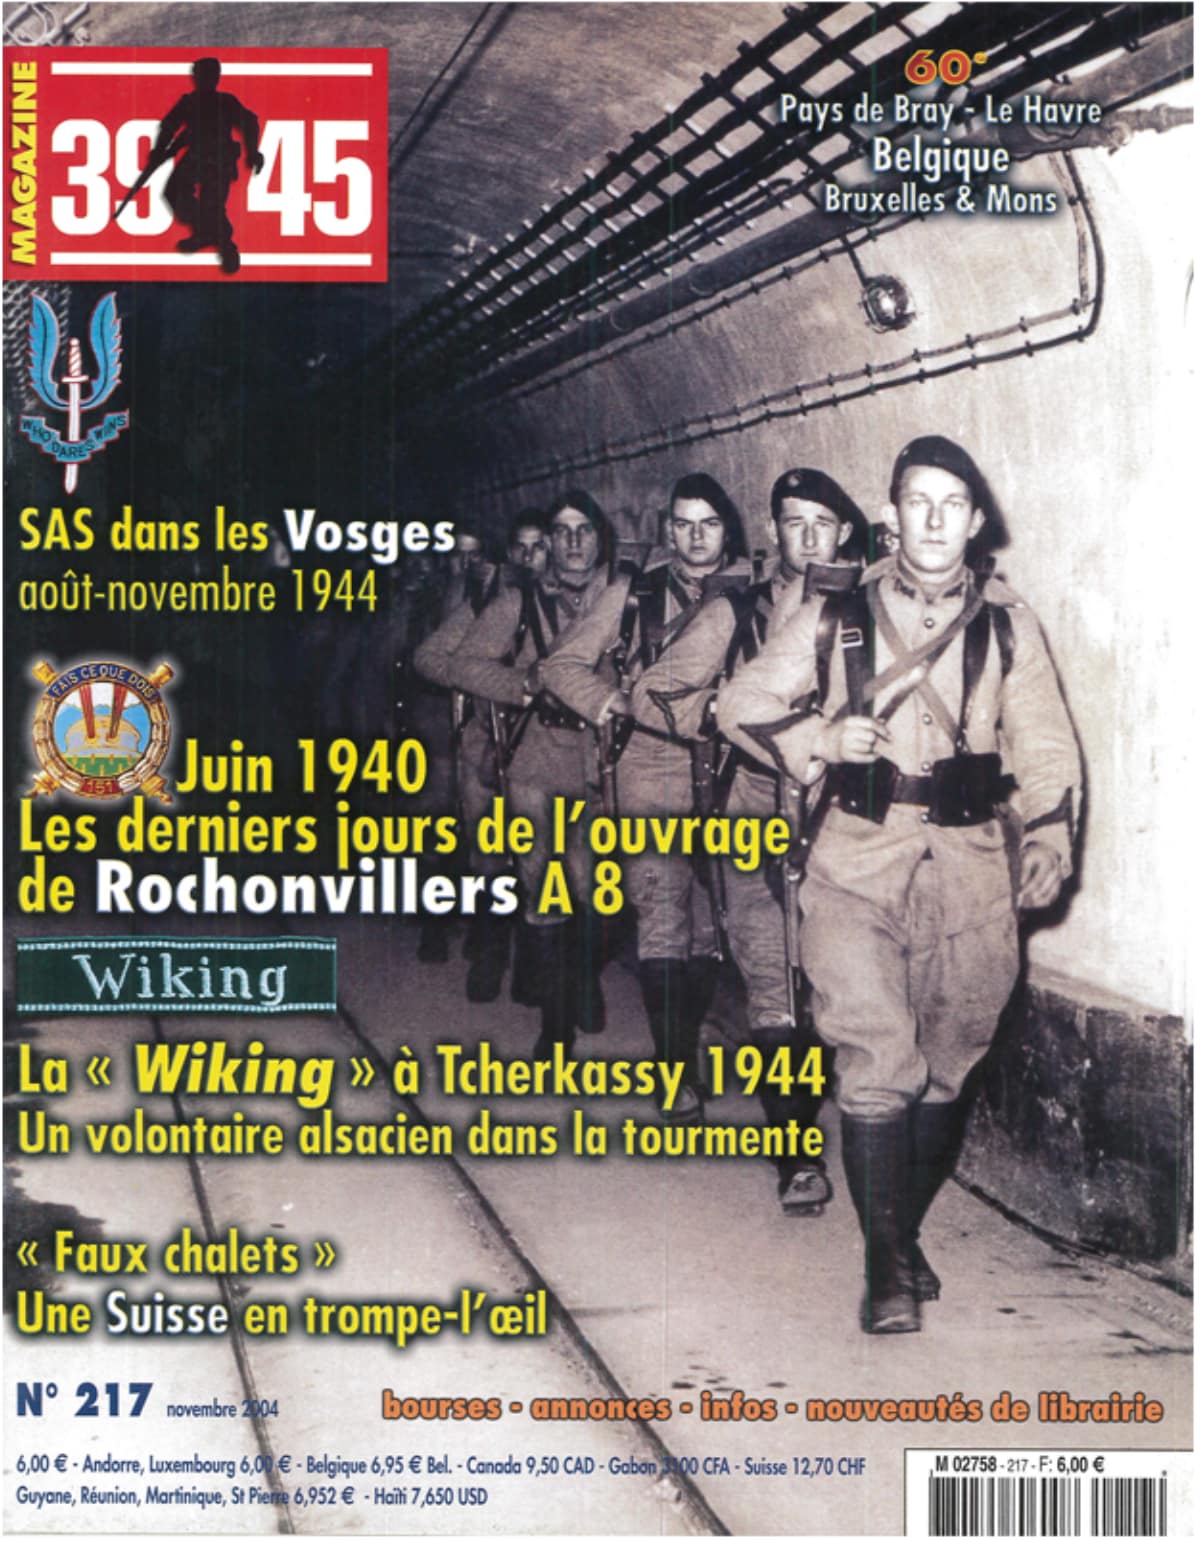 39-45 magazine n° 217 - Les derniers jours de l'ouvrage de Rochonvillers A8 (pages 34 à 51) - HOHNADEL Alain - MARY Jean Yves